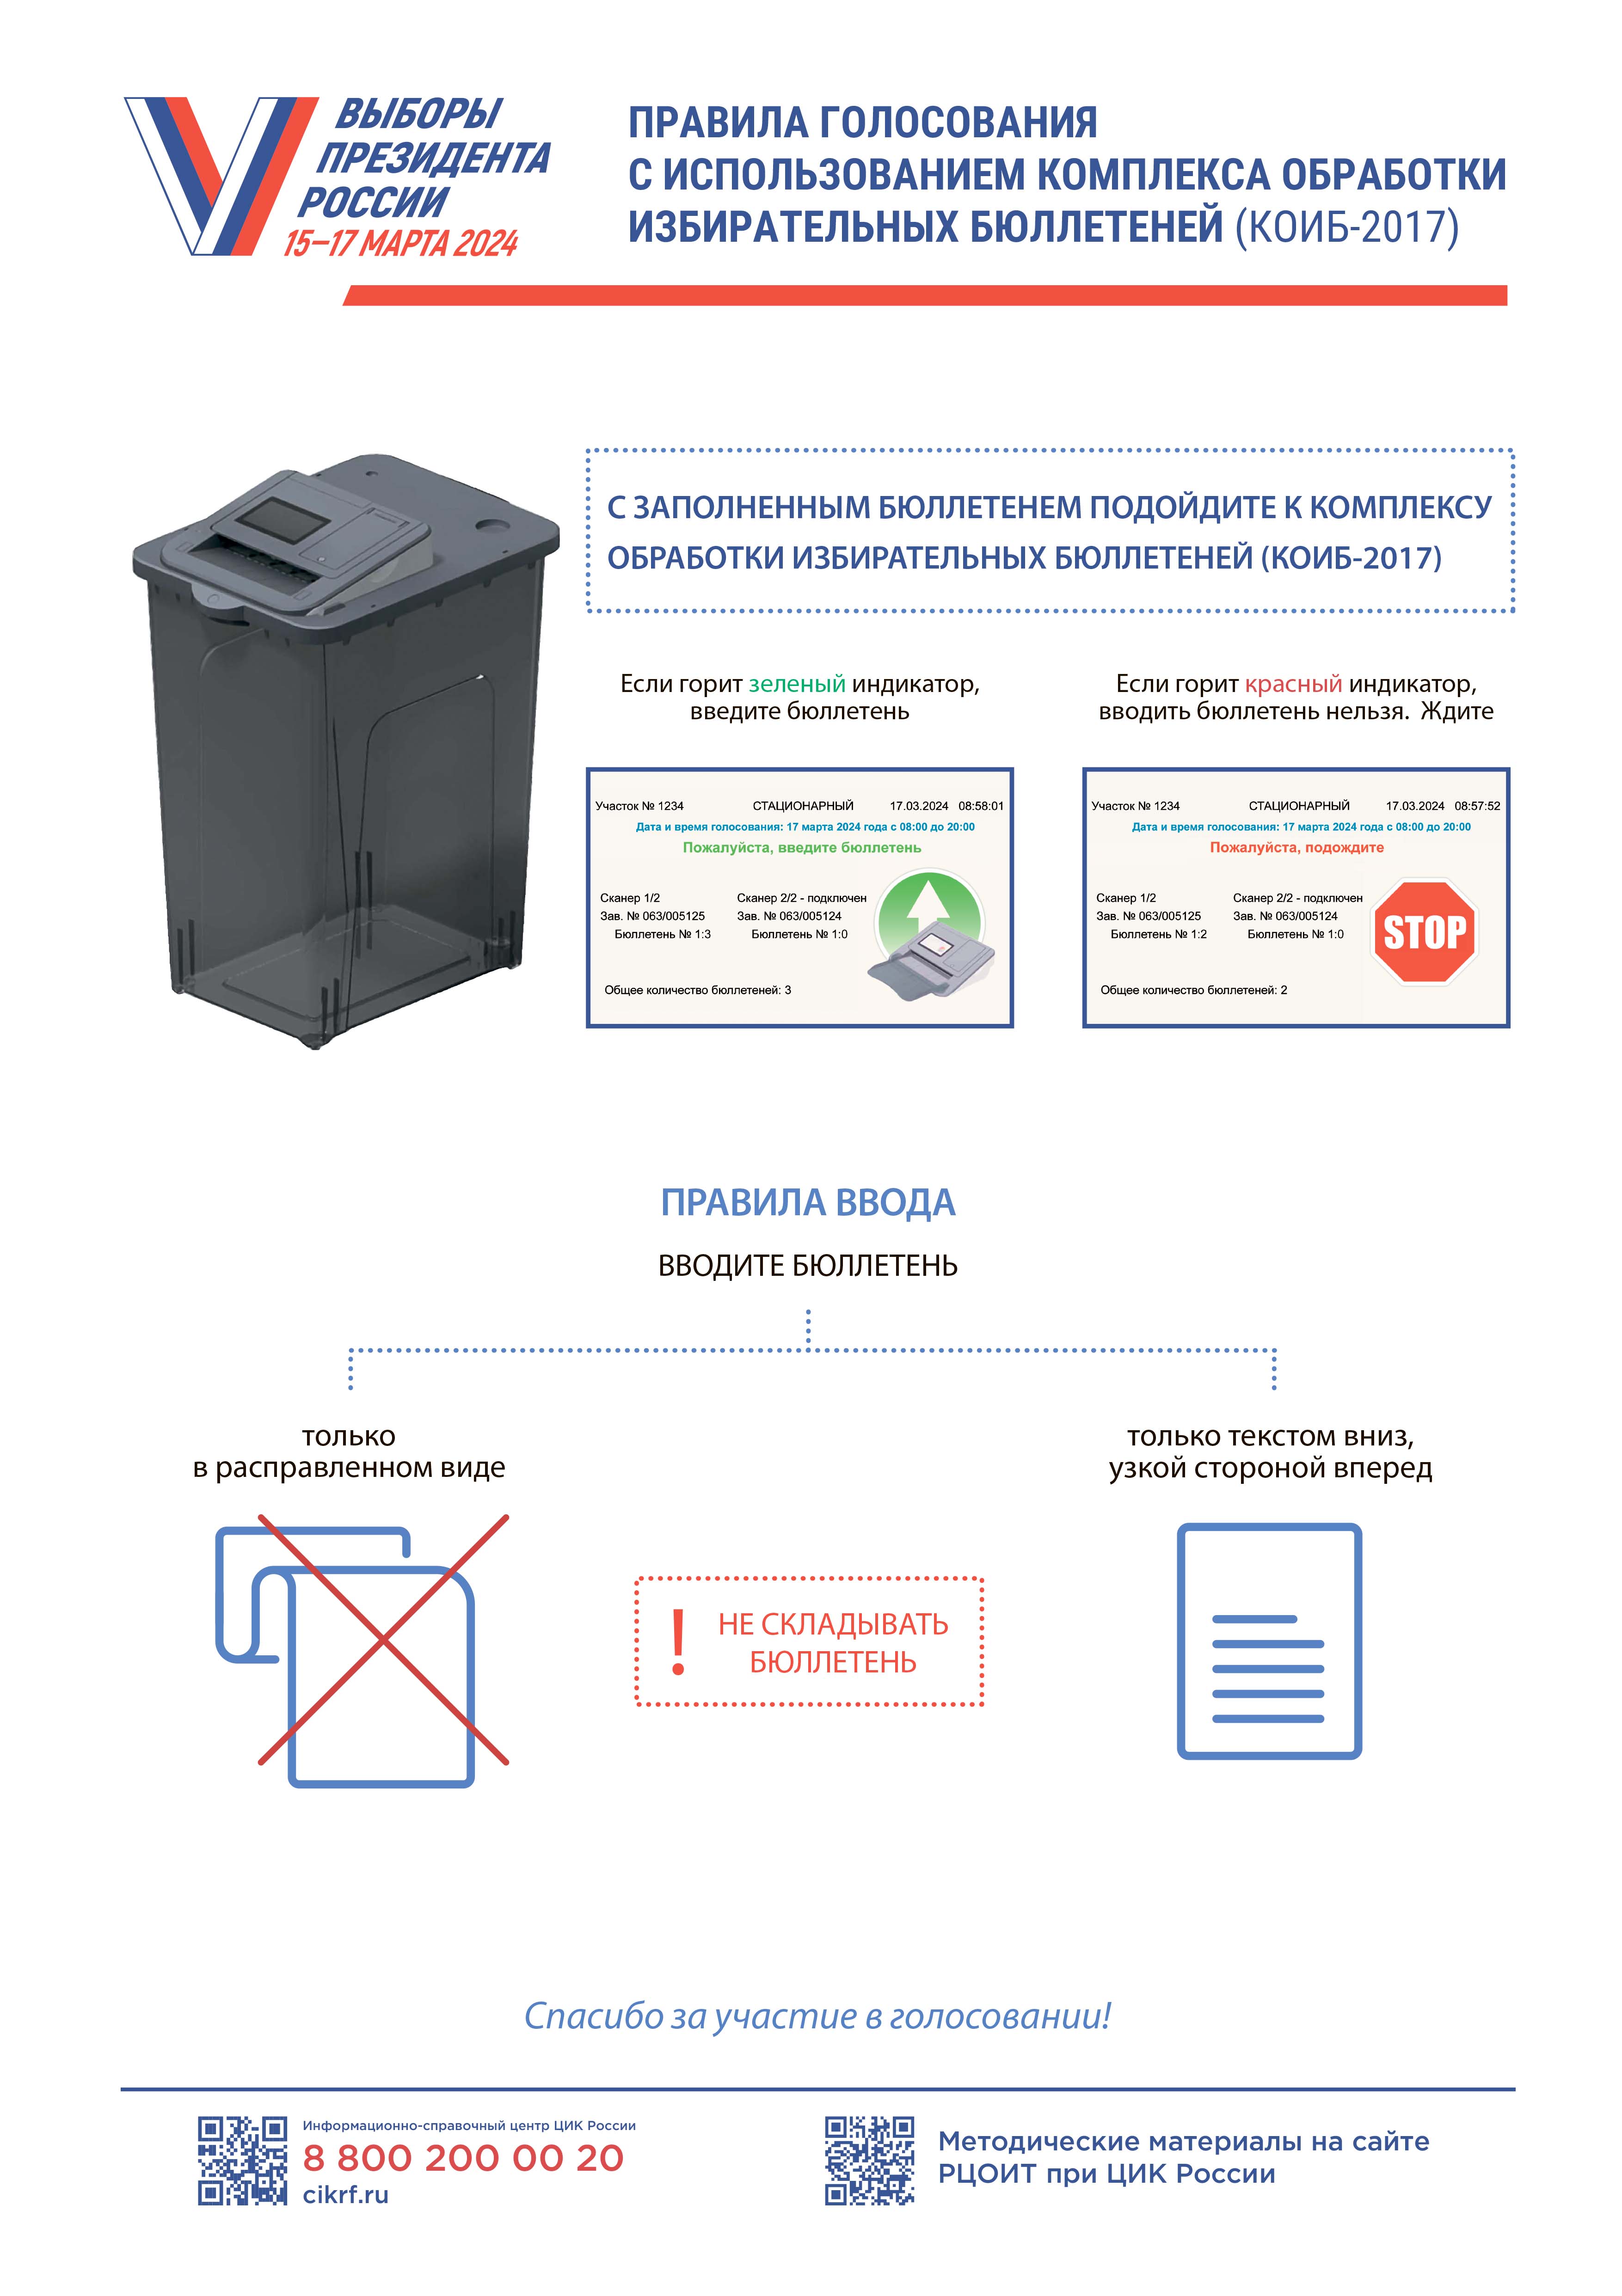 Правила голосования с использованием комплекса обработки избирательных бюллетеней (КОИБ-2017 МГТУ)